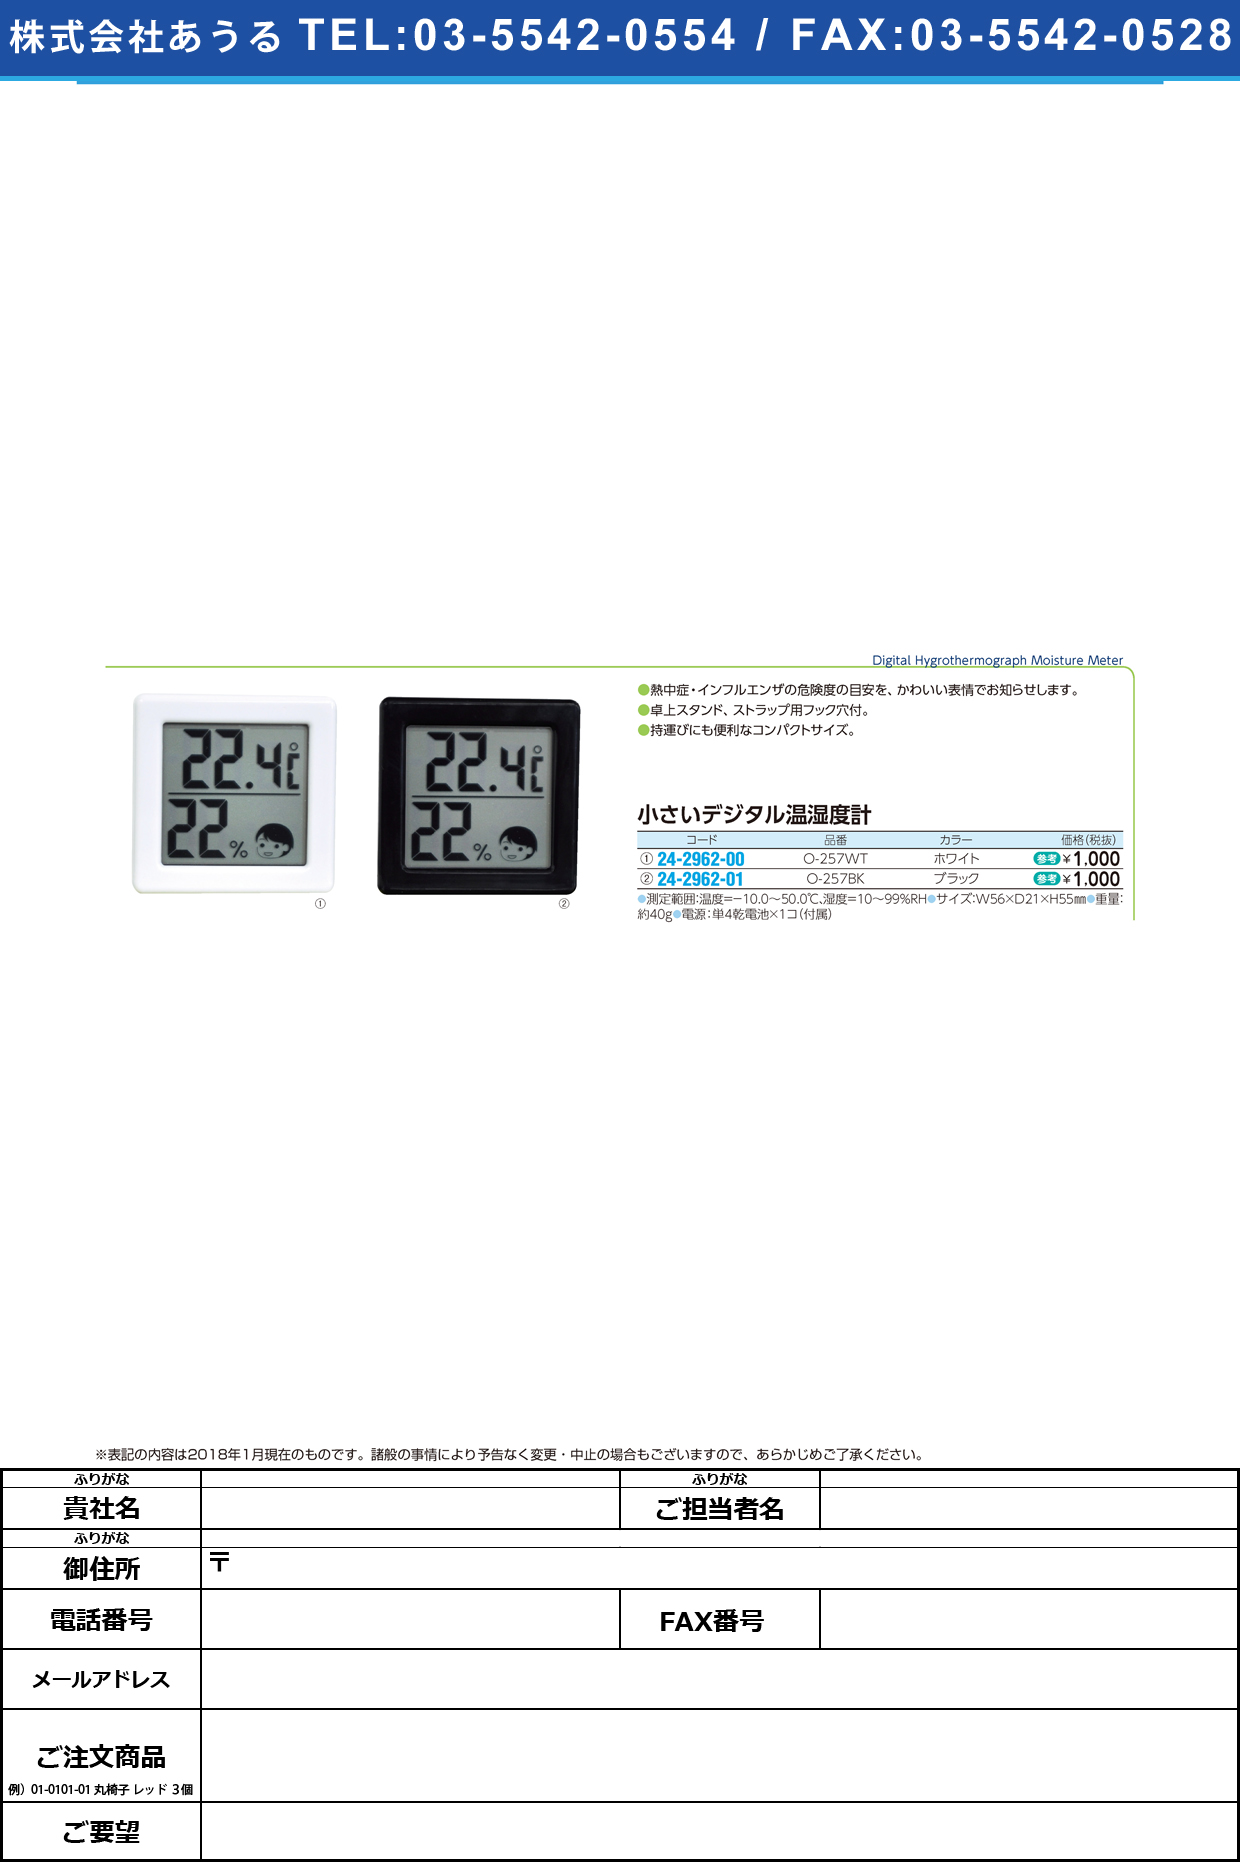 (24-2962-01)小さいデジタル温湿度計 O-257BK(ﾌﾞﾗｯｸ) ﾁｲｻｲﾃﾞｼﾞﾀﾙｵﾝｼﾂﾄﾞｹｲ(ドリテック)【1台単位】【2018年カタログ商品】